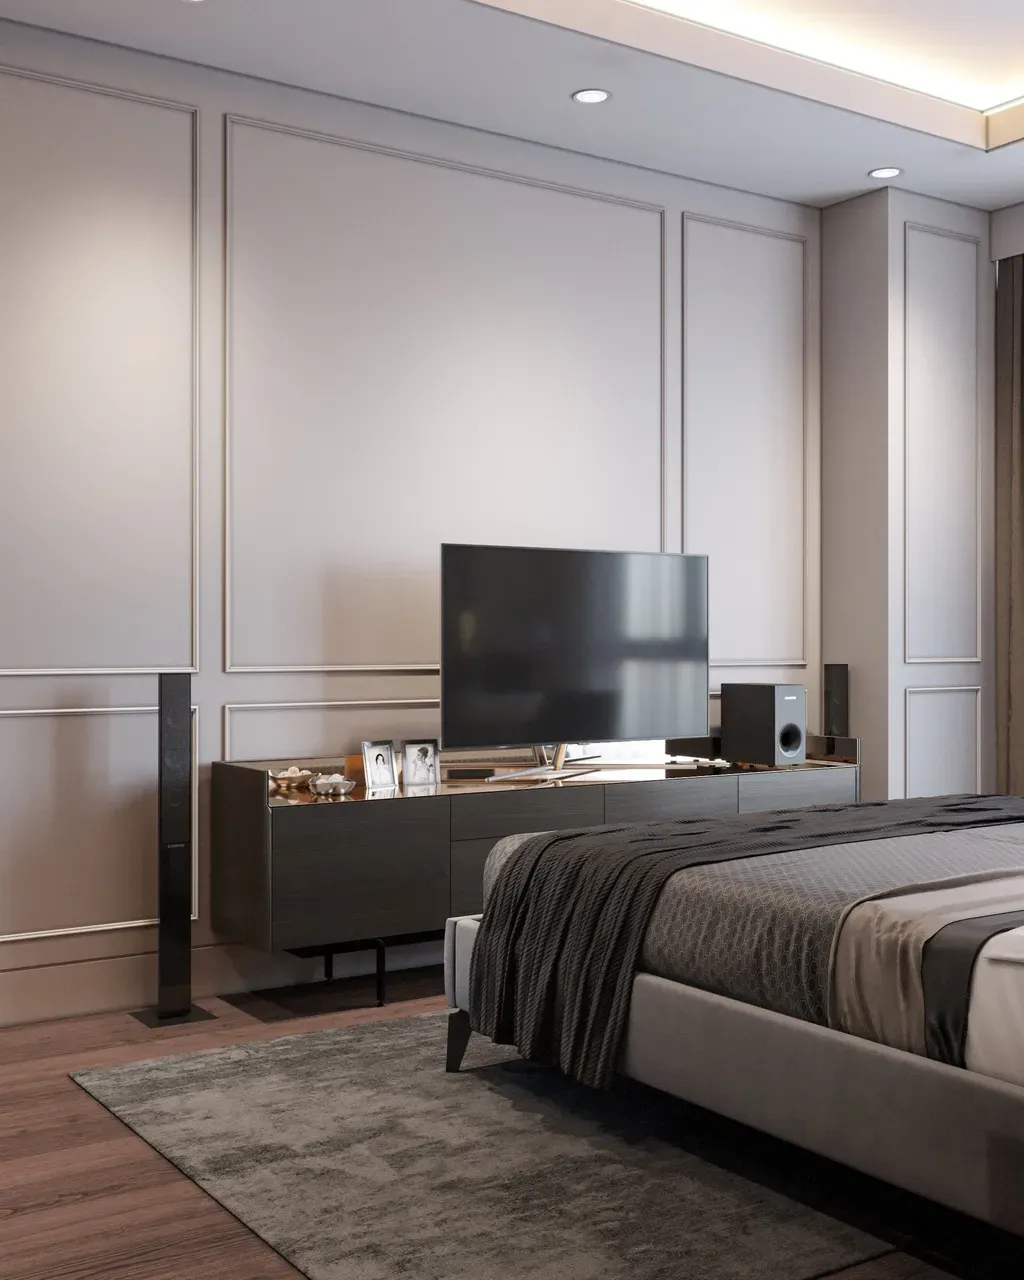 Phòng ngủ - Concept căn hộ - Phong cách Neo Classic & Minimalism số 2  | Space T